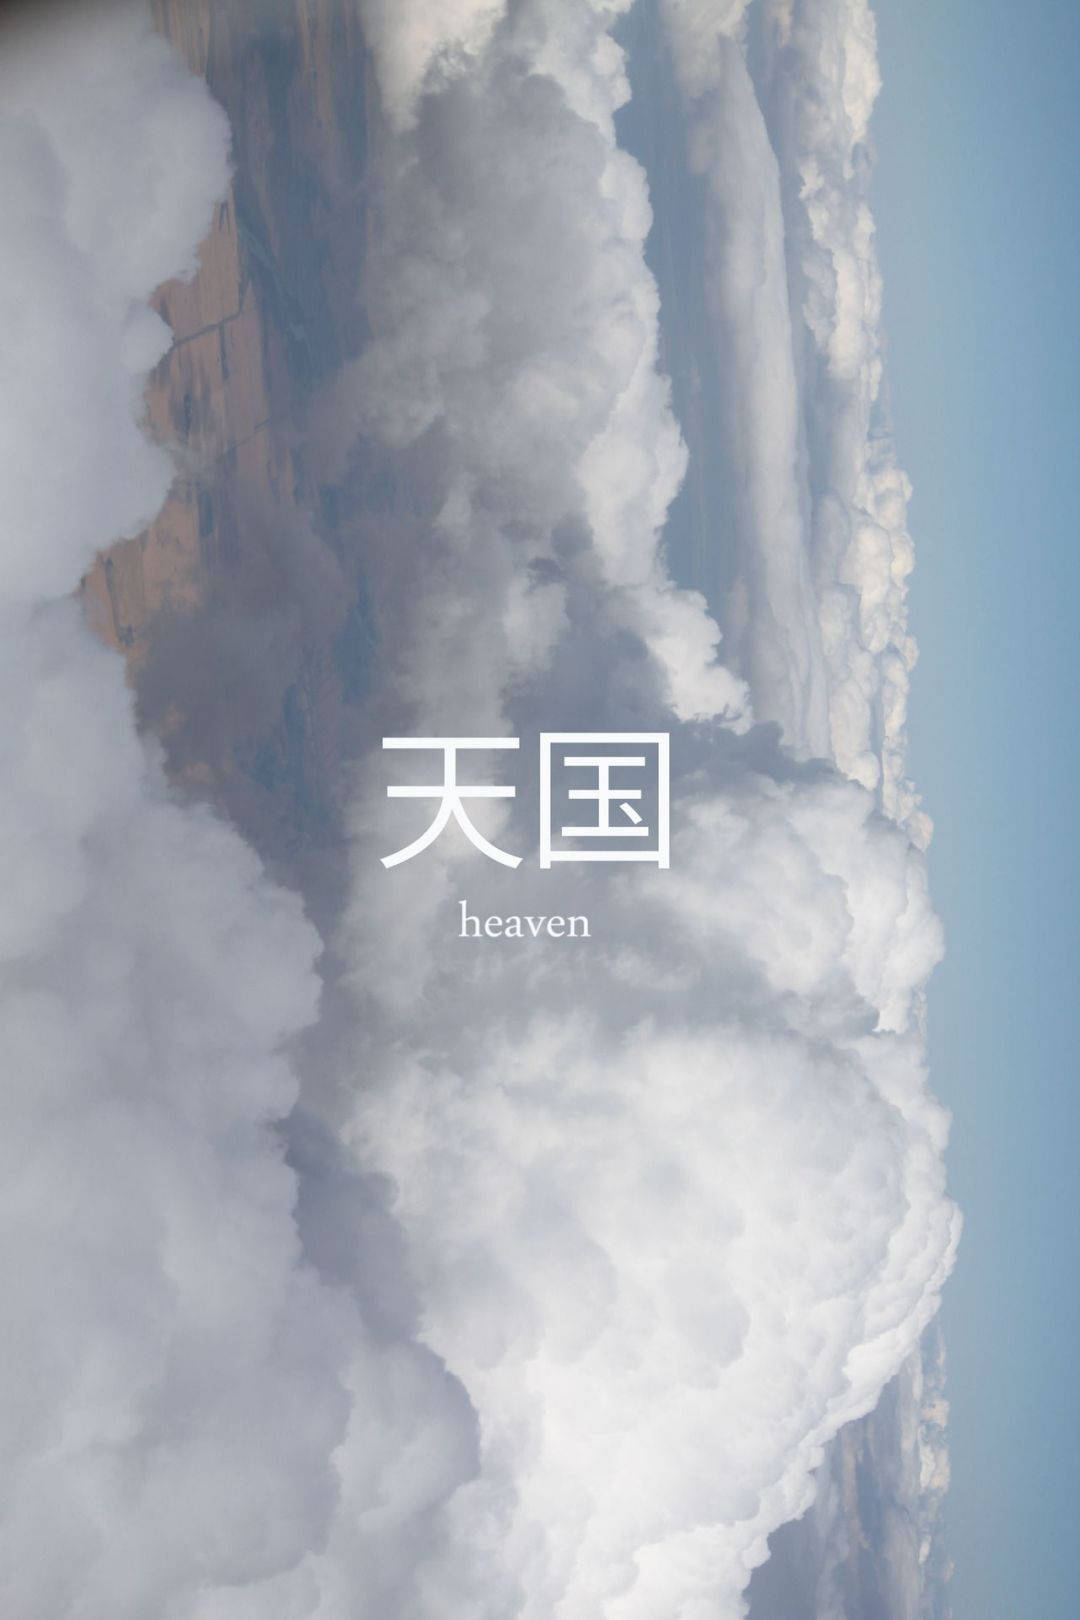 Estéticabranca Do Tumblr, Nuvens Do Céu E Kanji. Papel de Parede